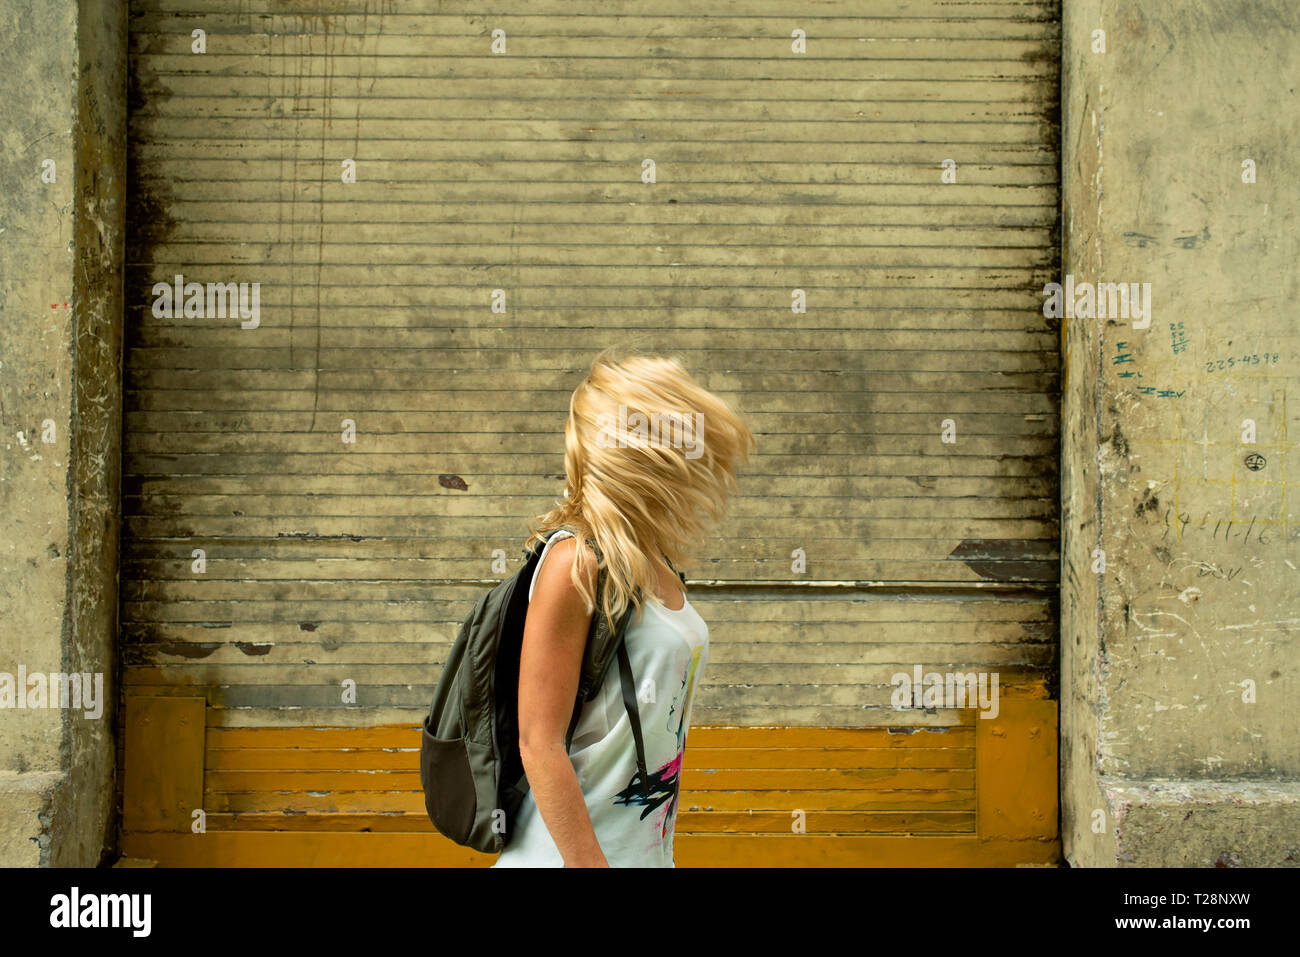 Femme blonde en passant par la toile urbaine de vent avec un couvre le visage. Voyage / backpacker concept, RF. Banque D'Images